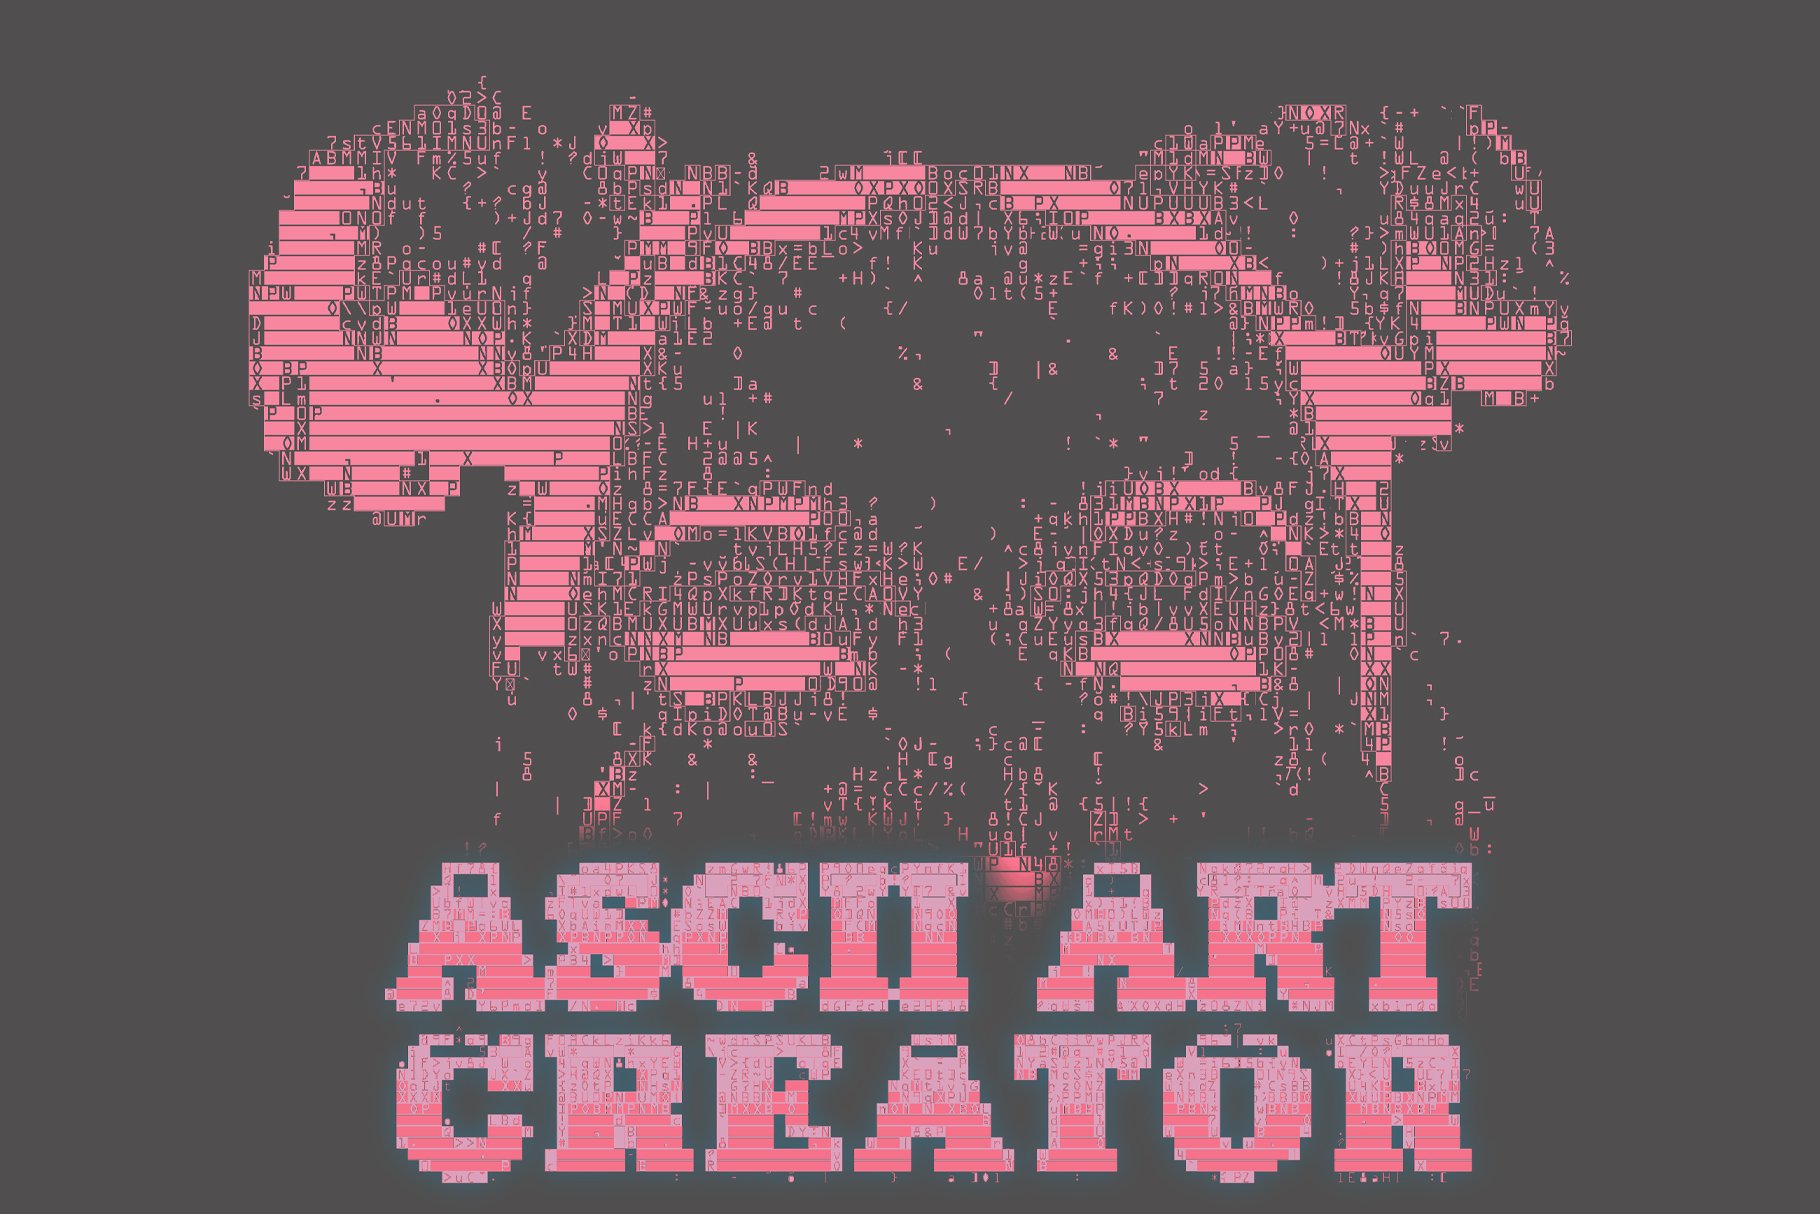 ASCII Art Creatorcover image.